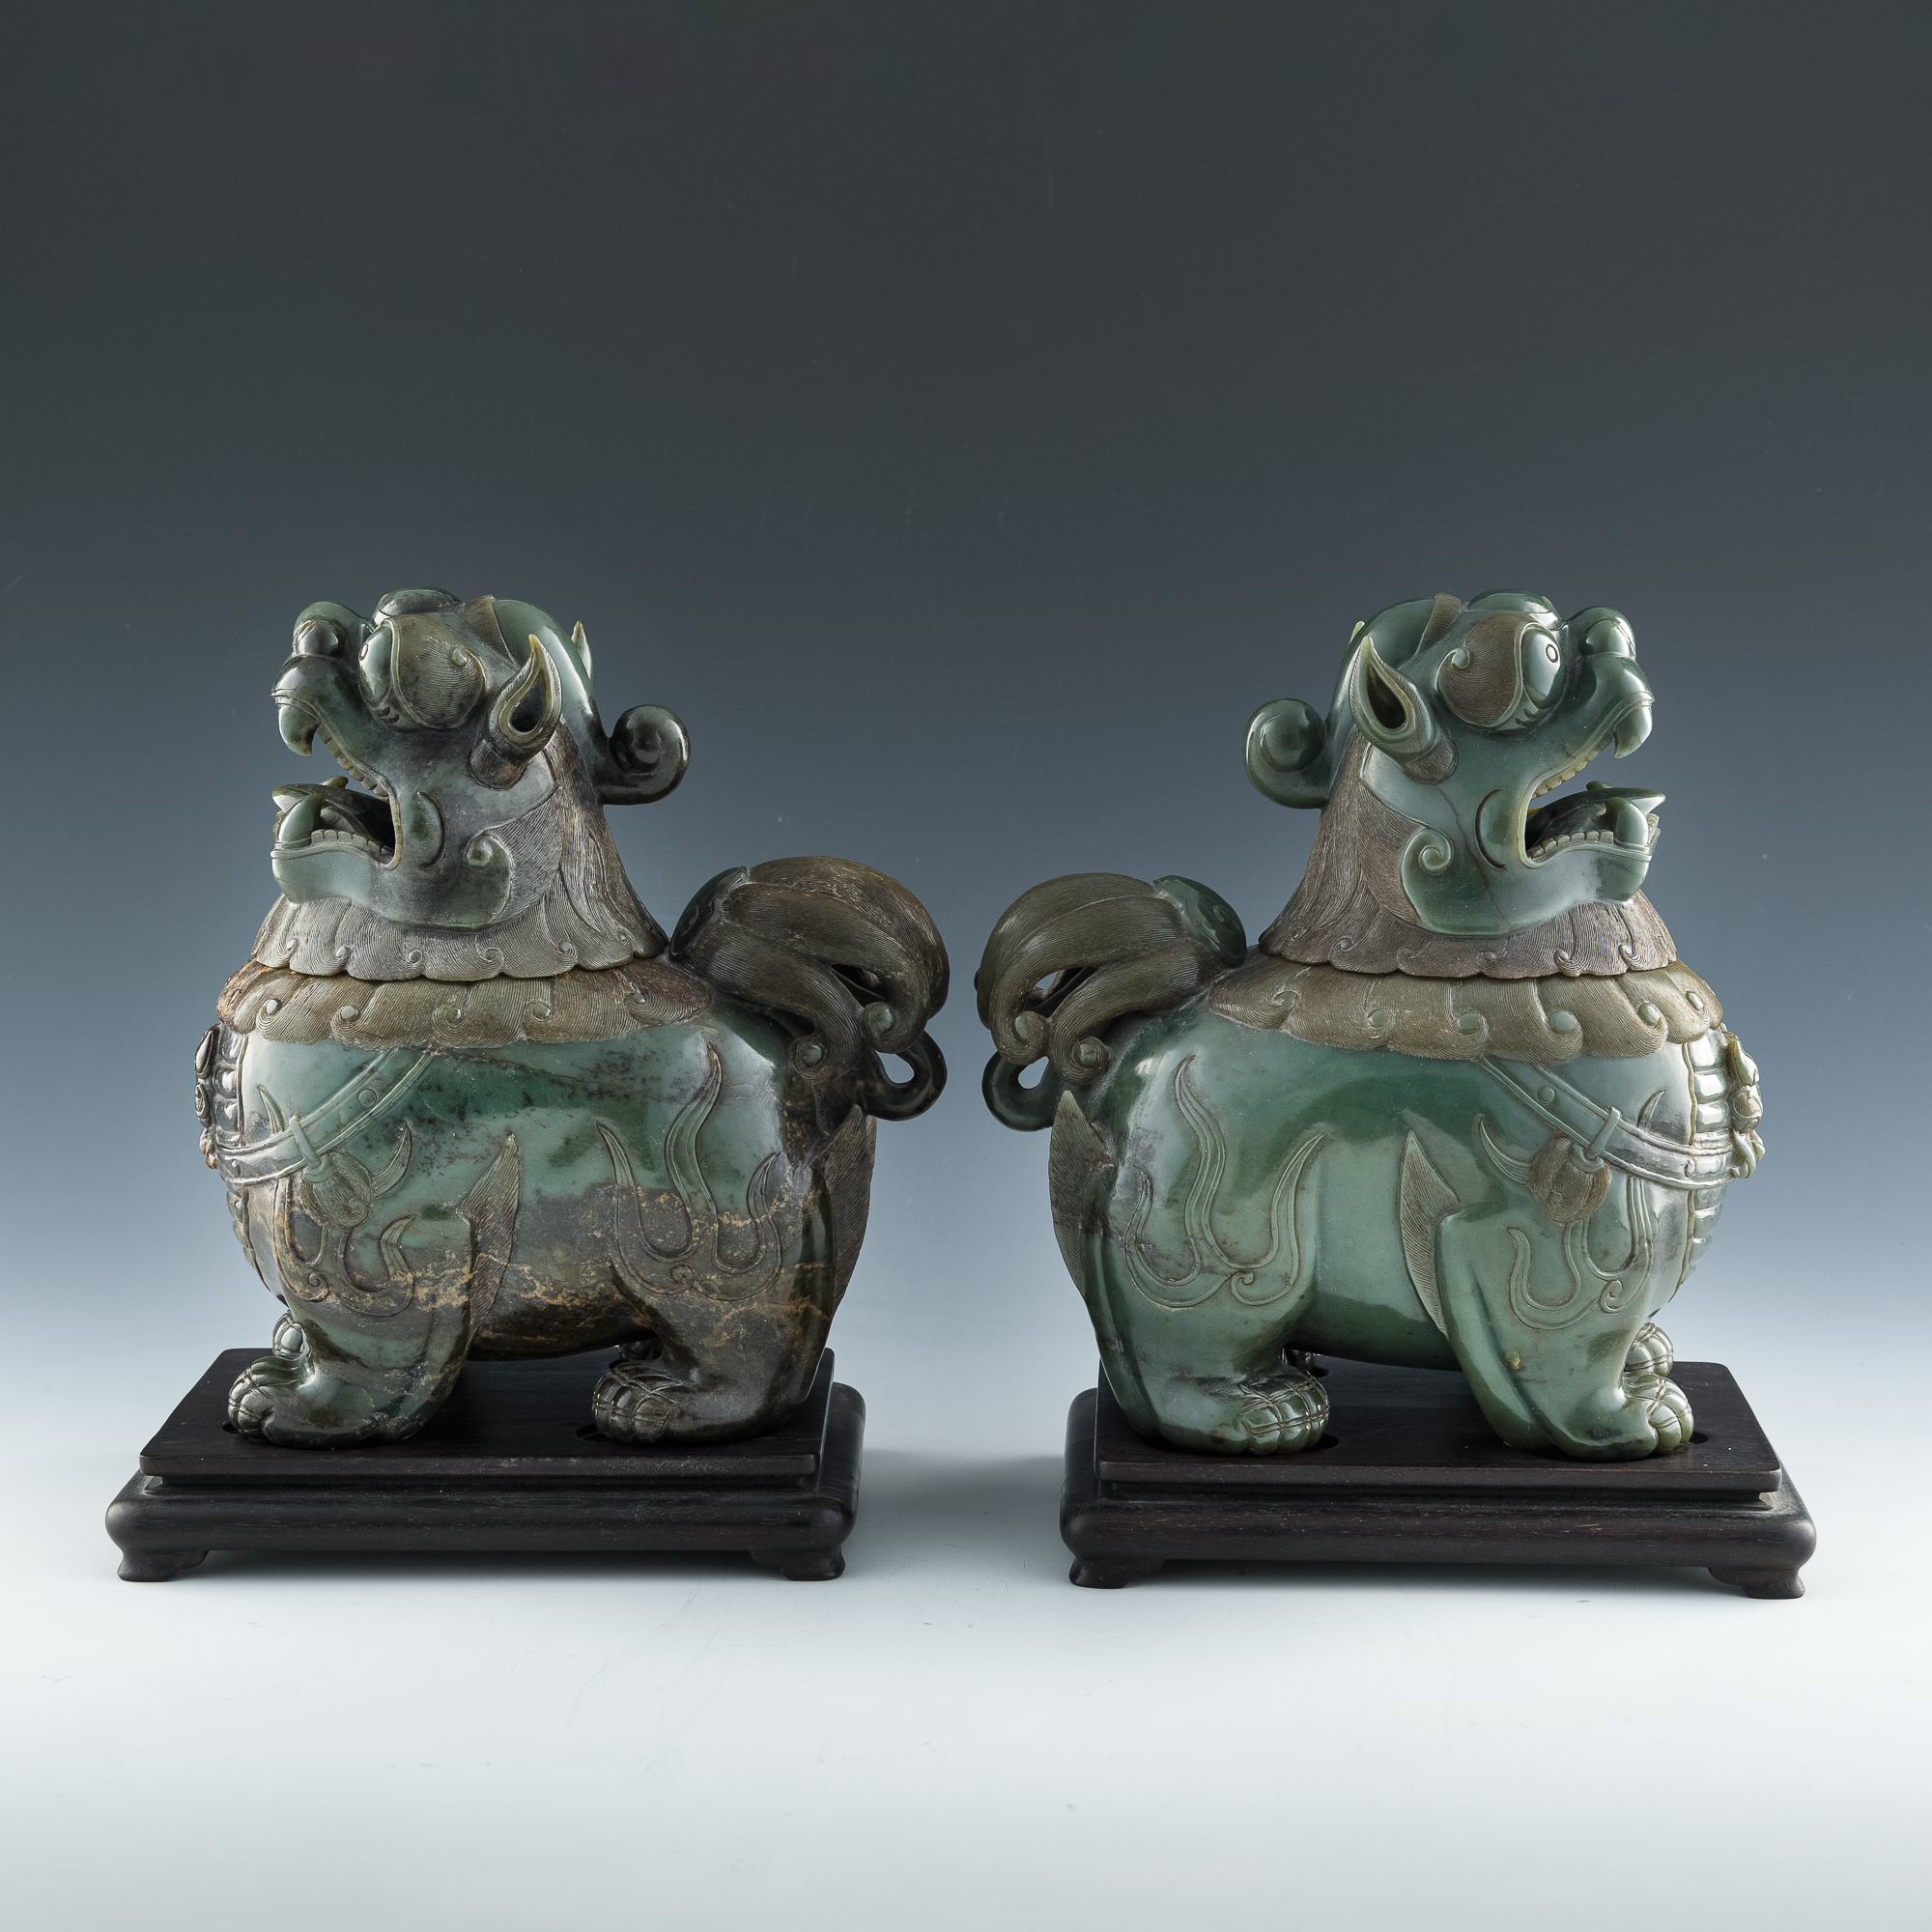 青玉甪端香薰一對A pair of Chinese carved celadon jade luduan-form 